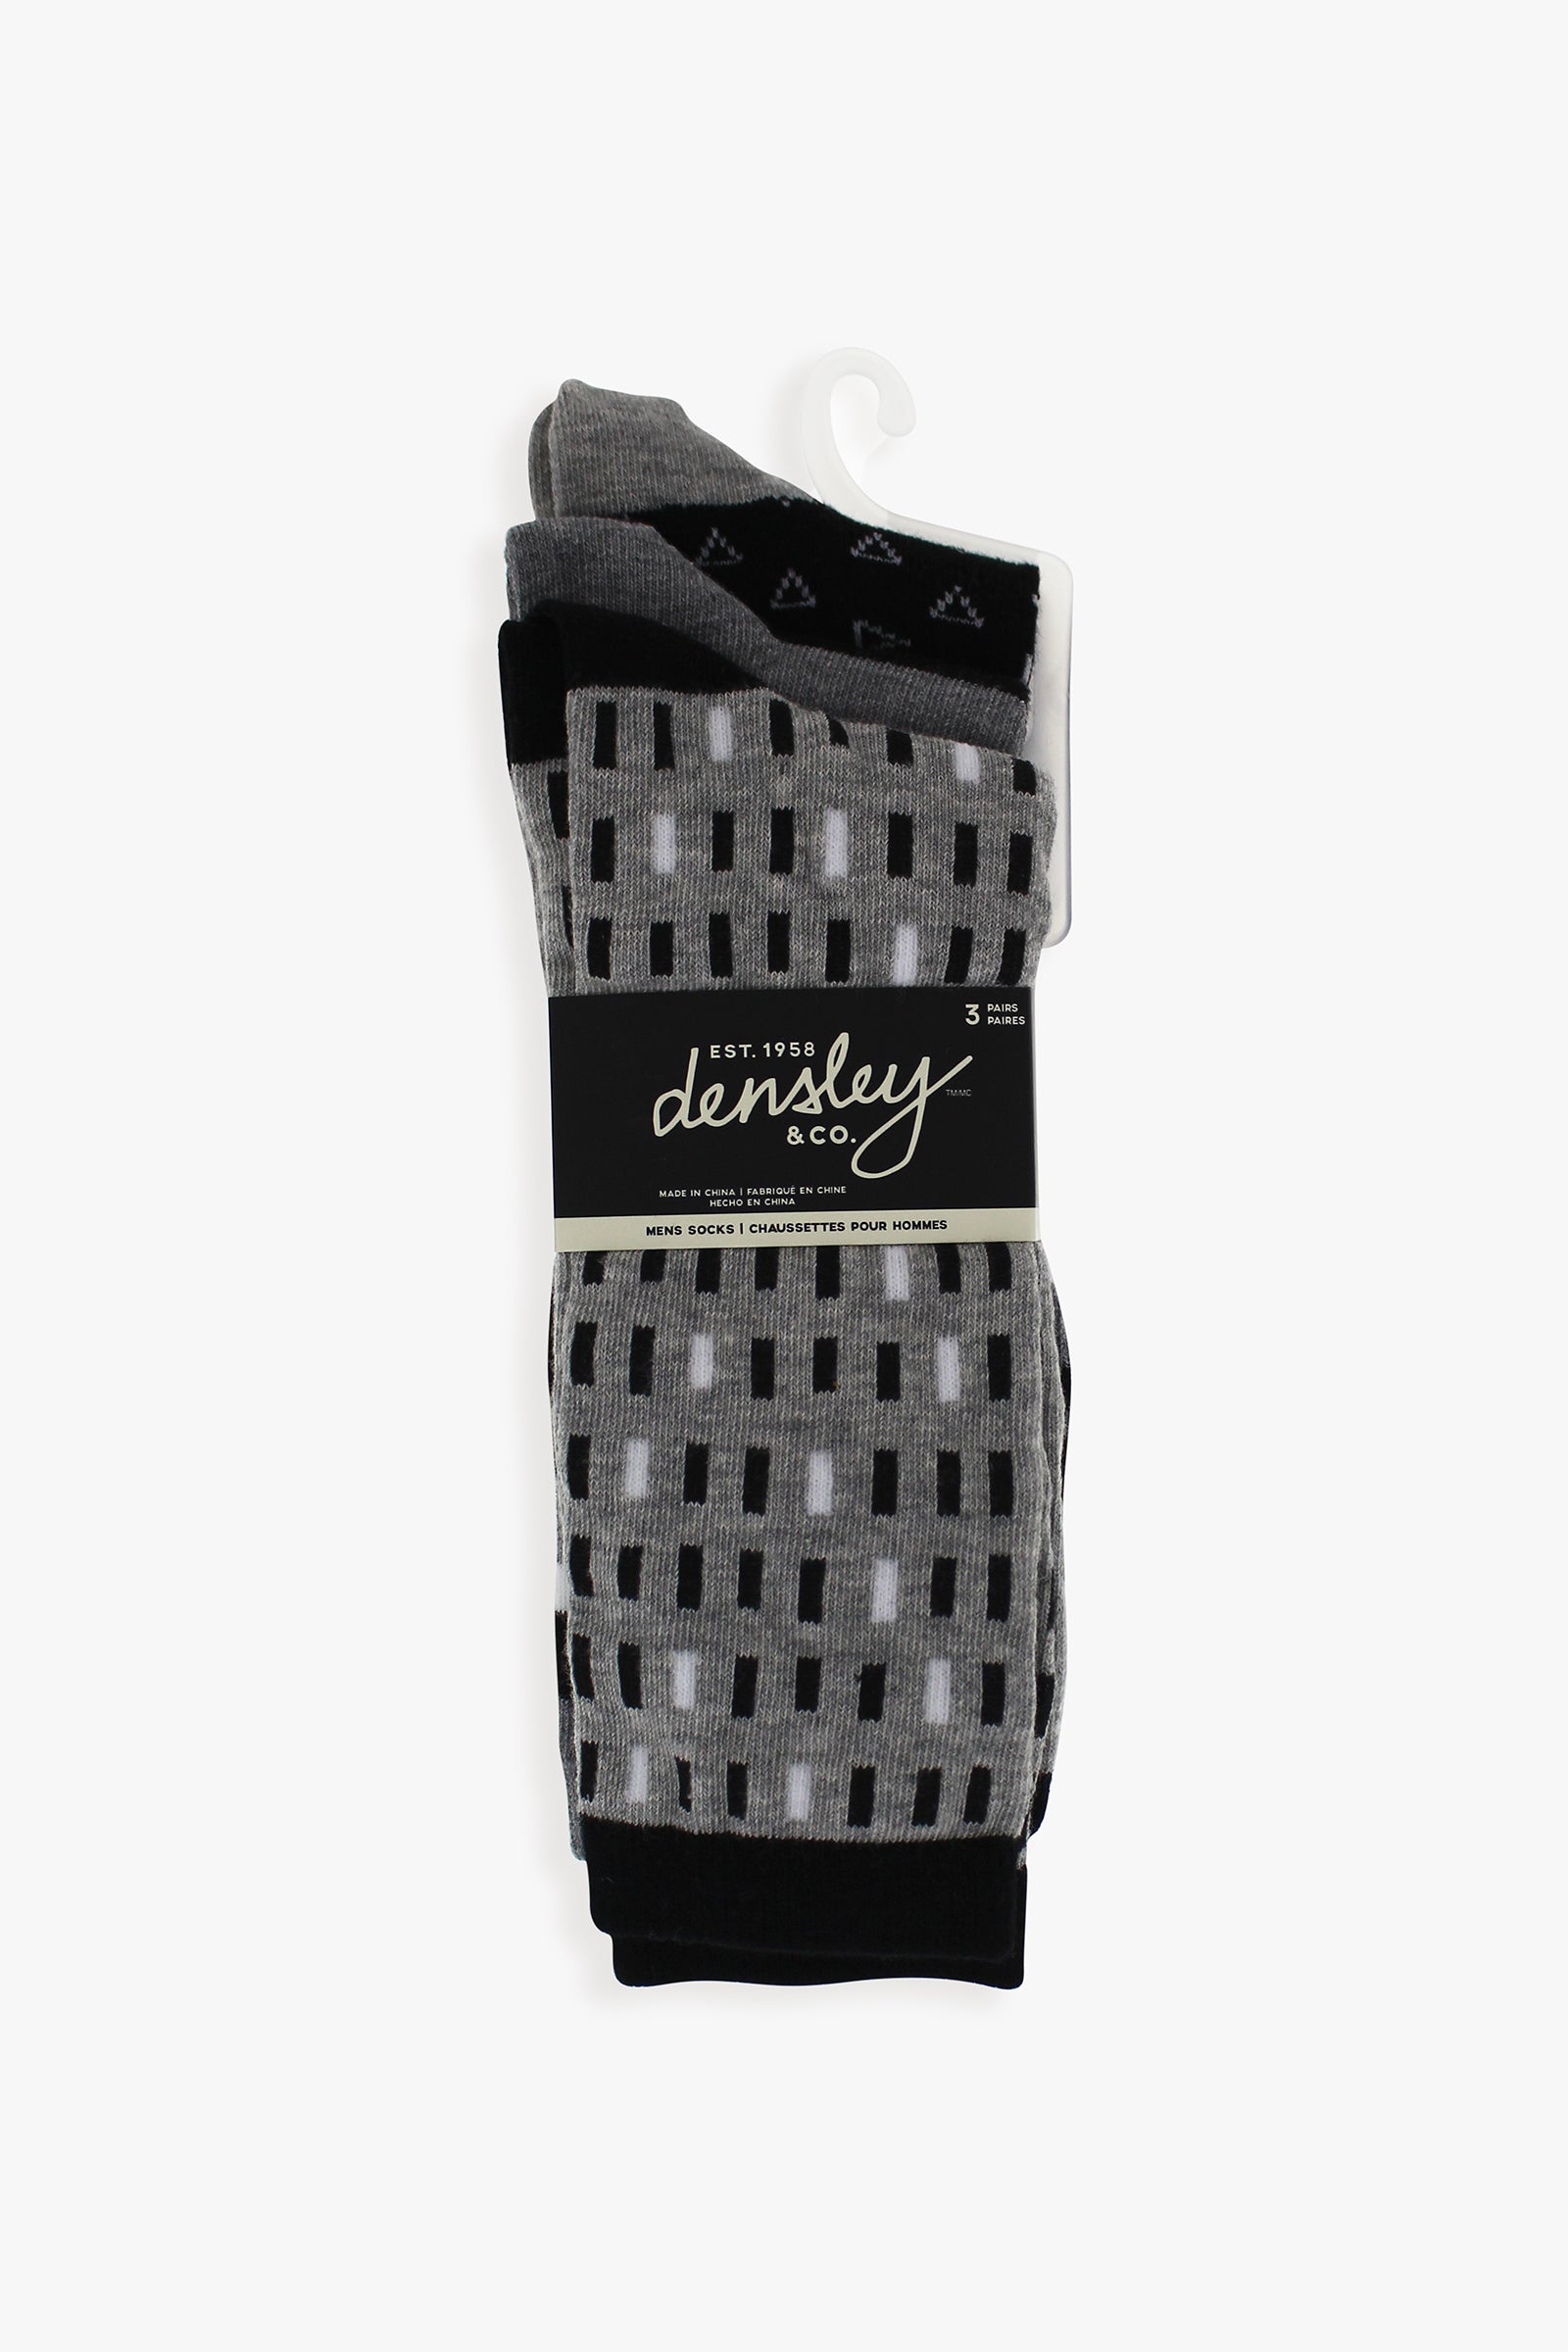 Men's 3-Pack Grey Dress Socks